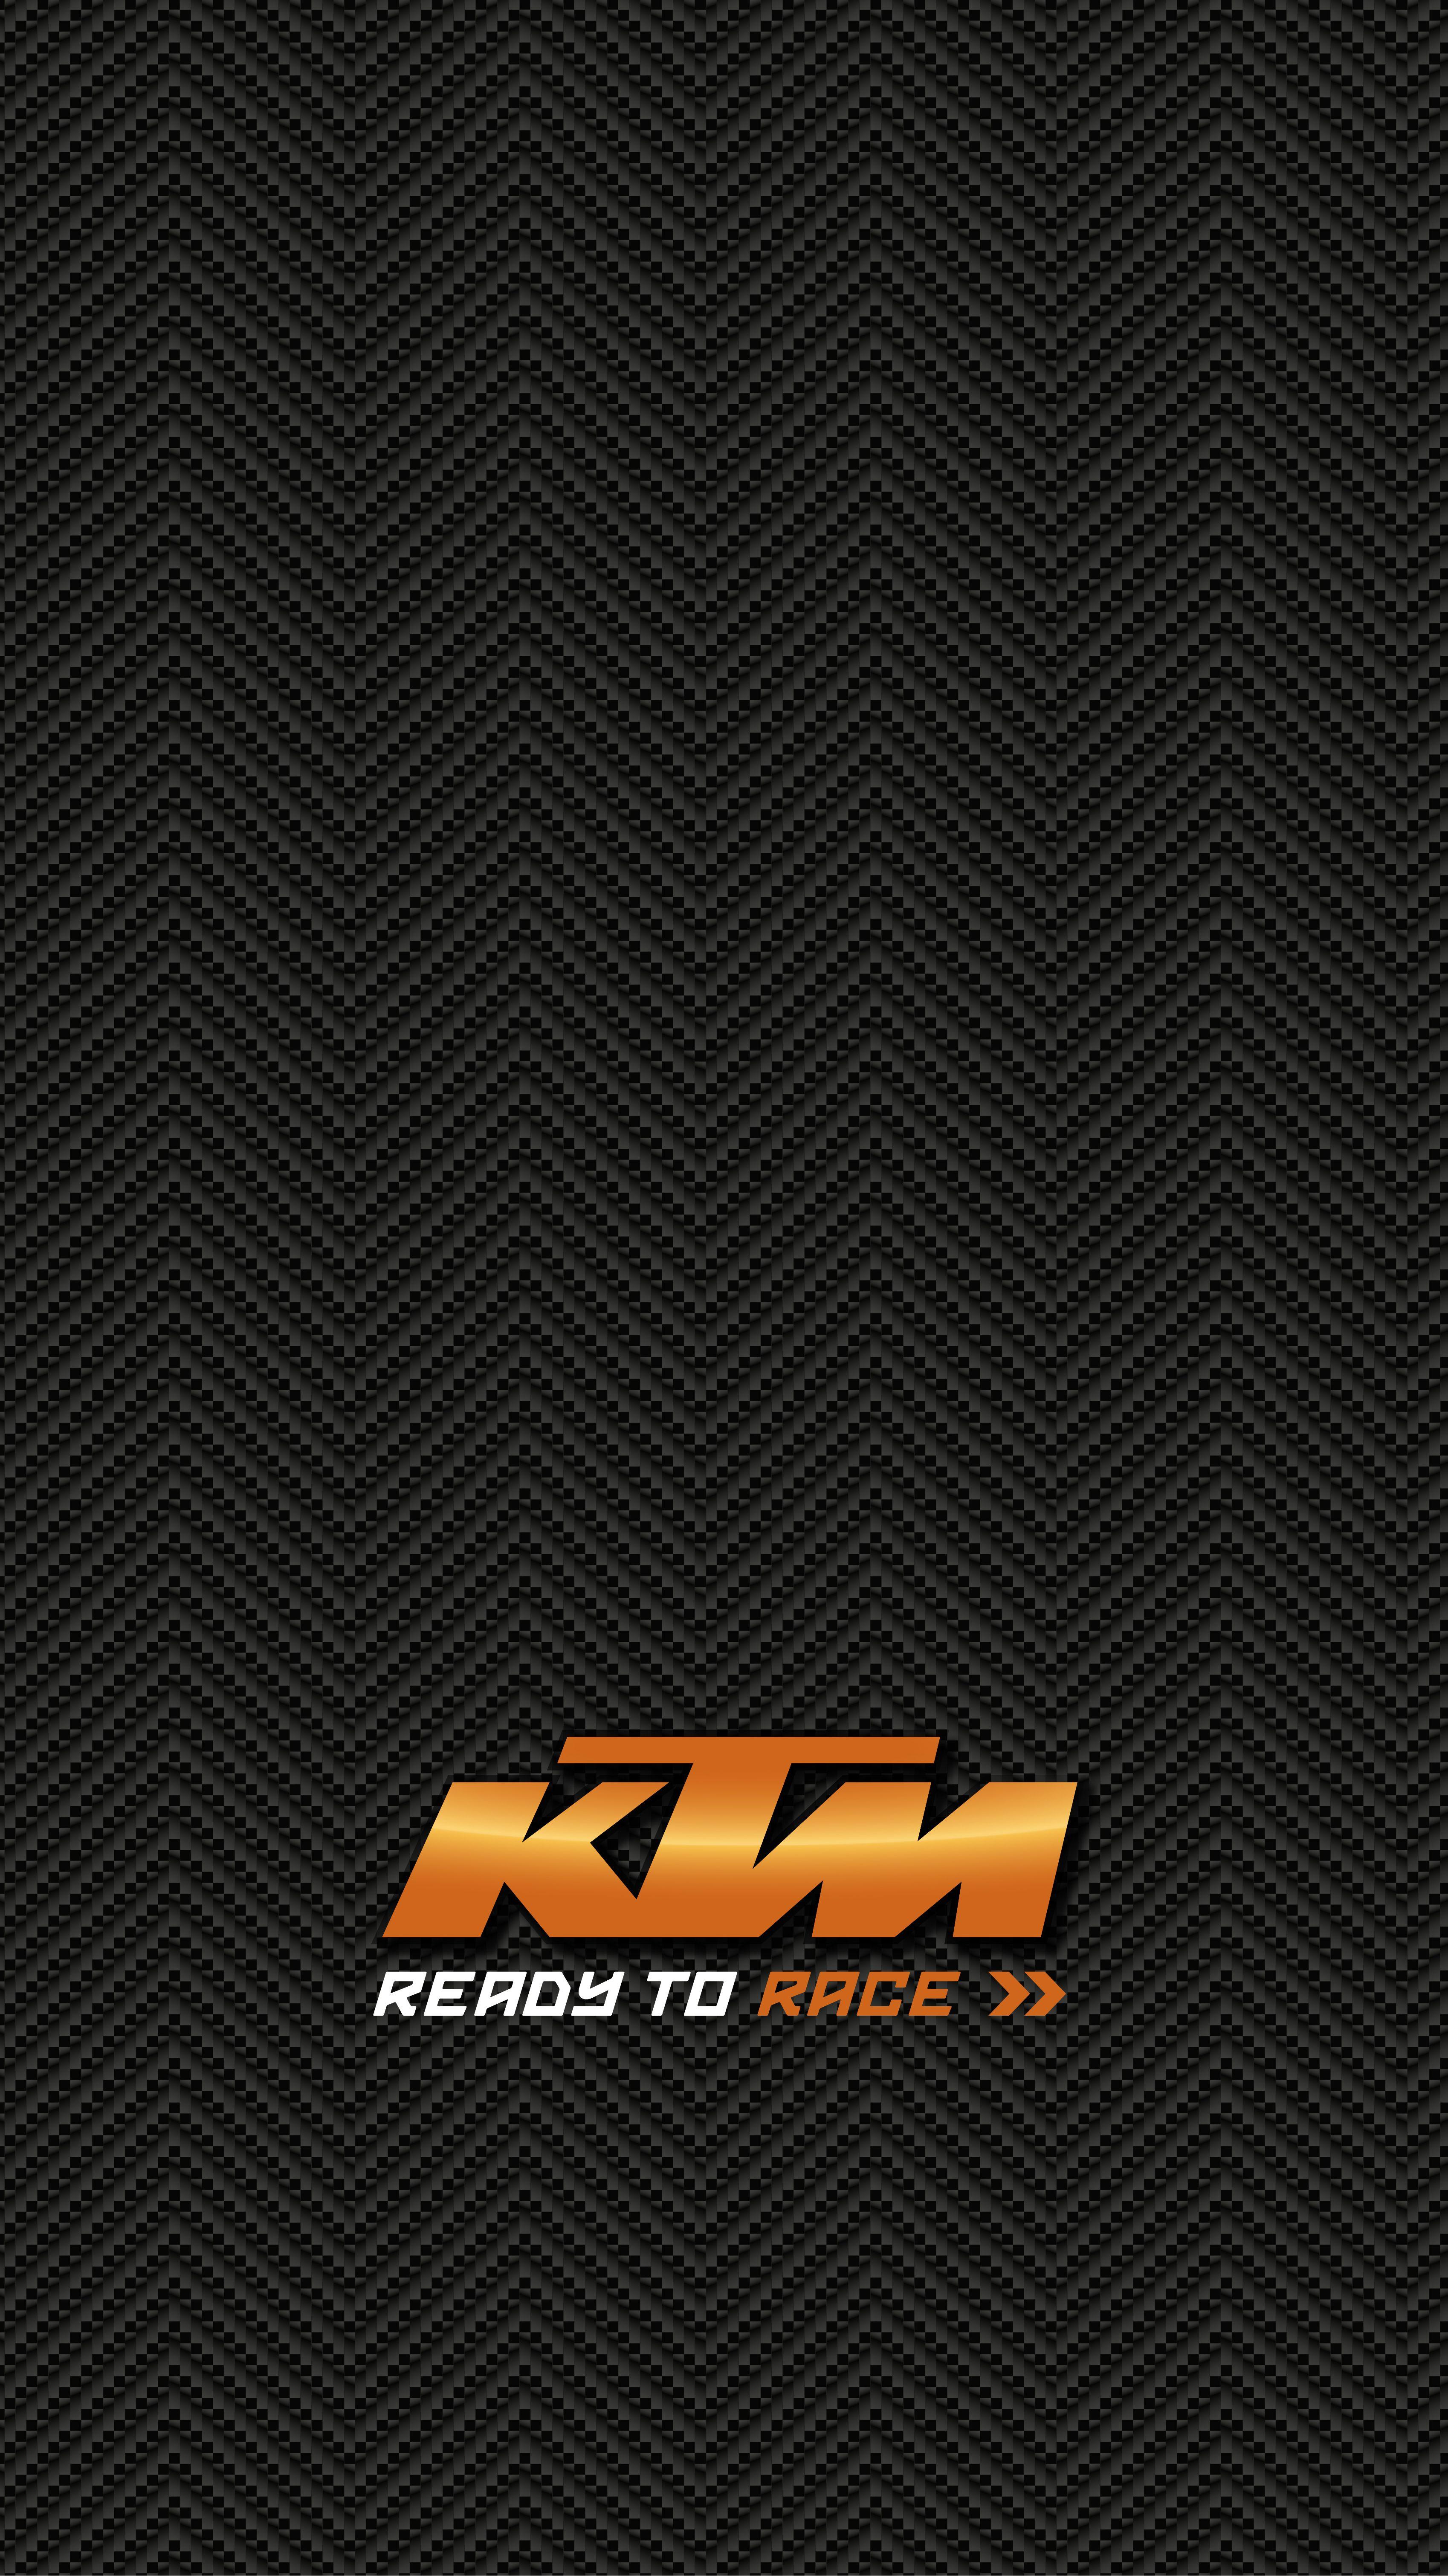 Ktm Rc 390, Beautiful, New, KTM HD phone wallpaper | Pxfuel